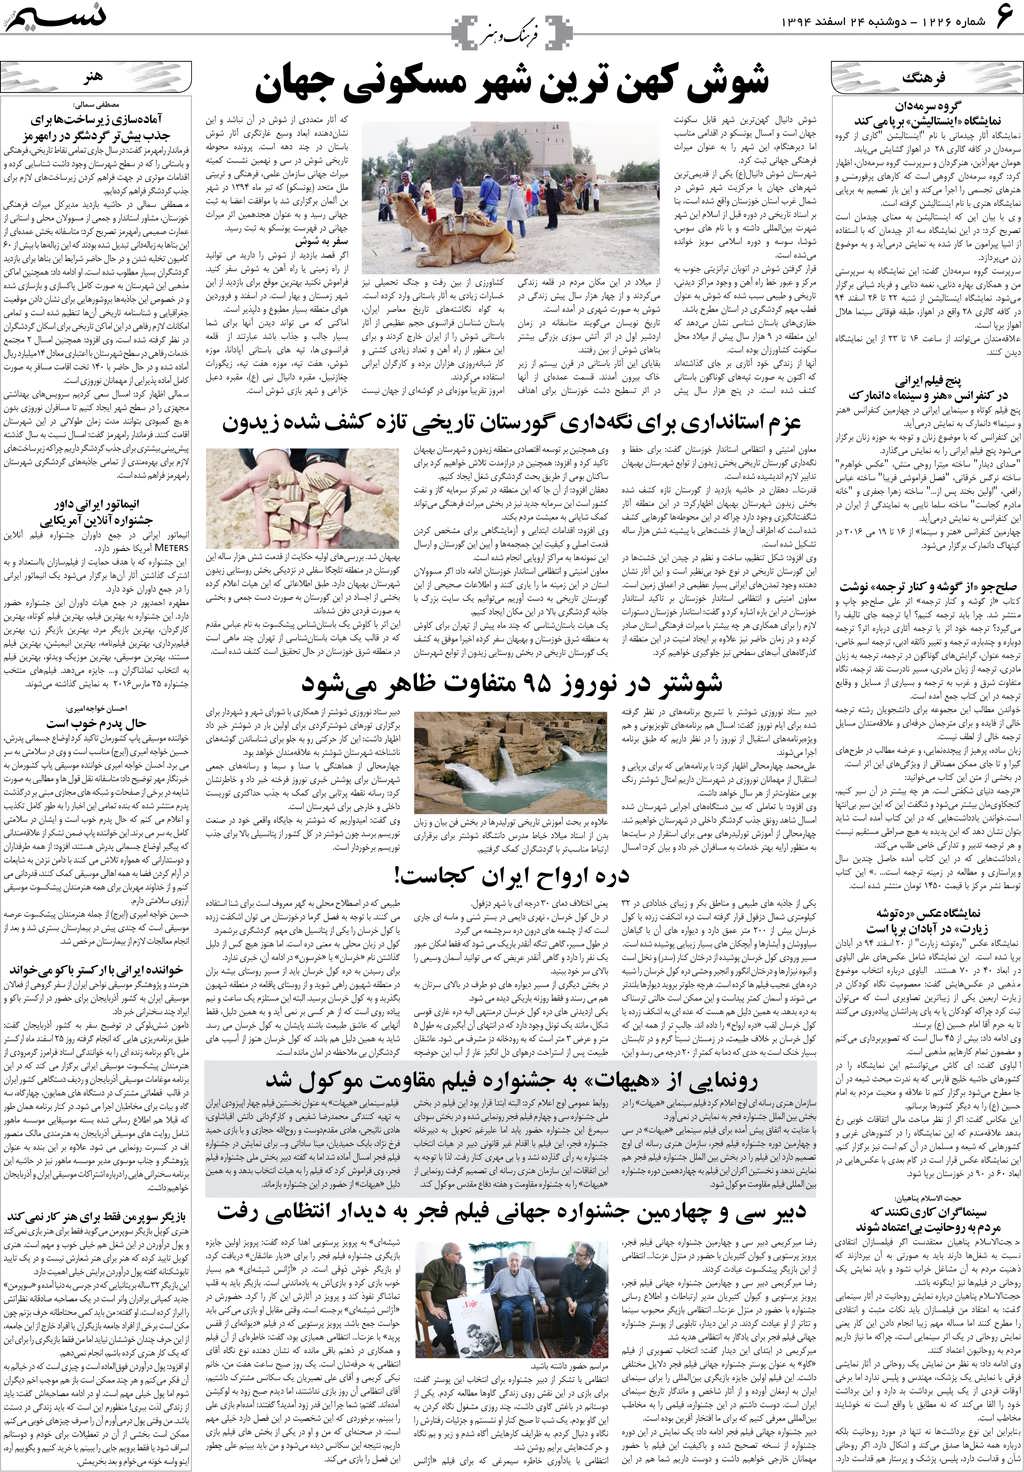 صفحه فرهنگ و هنر روزنامه نسیم شماره 1226